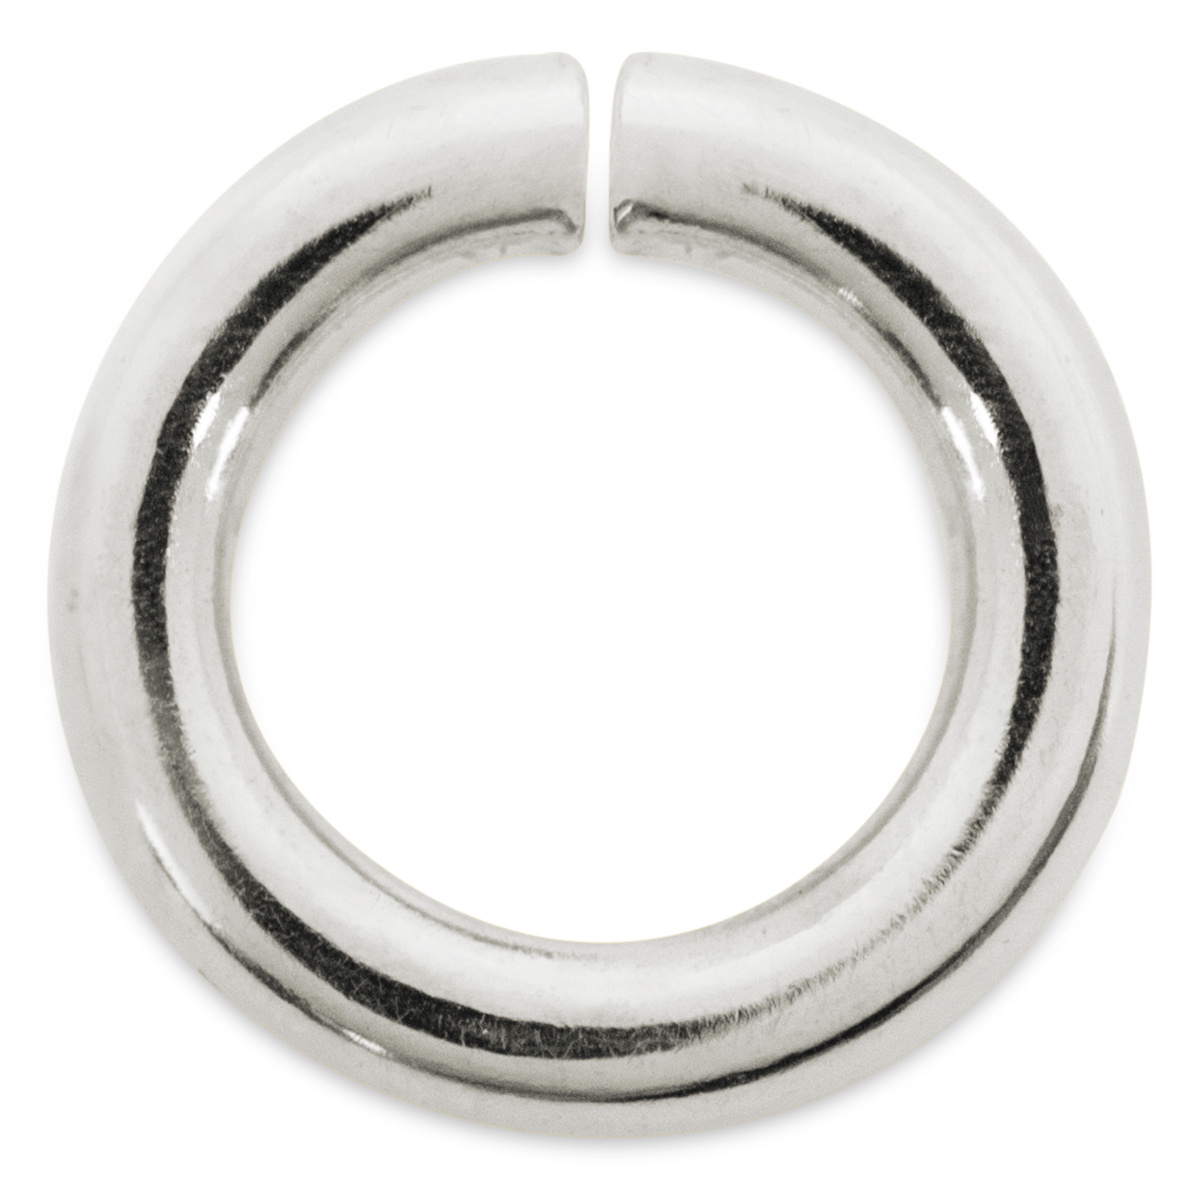 Binderinge, rund, 925/- Silber, Ø 3,5 mm, Stärke 0,7 mm